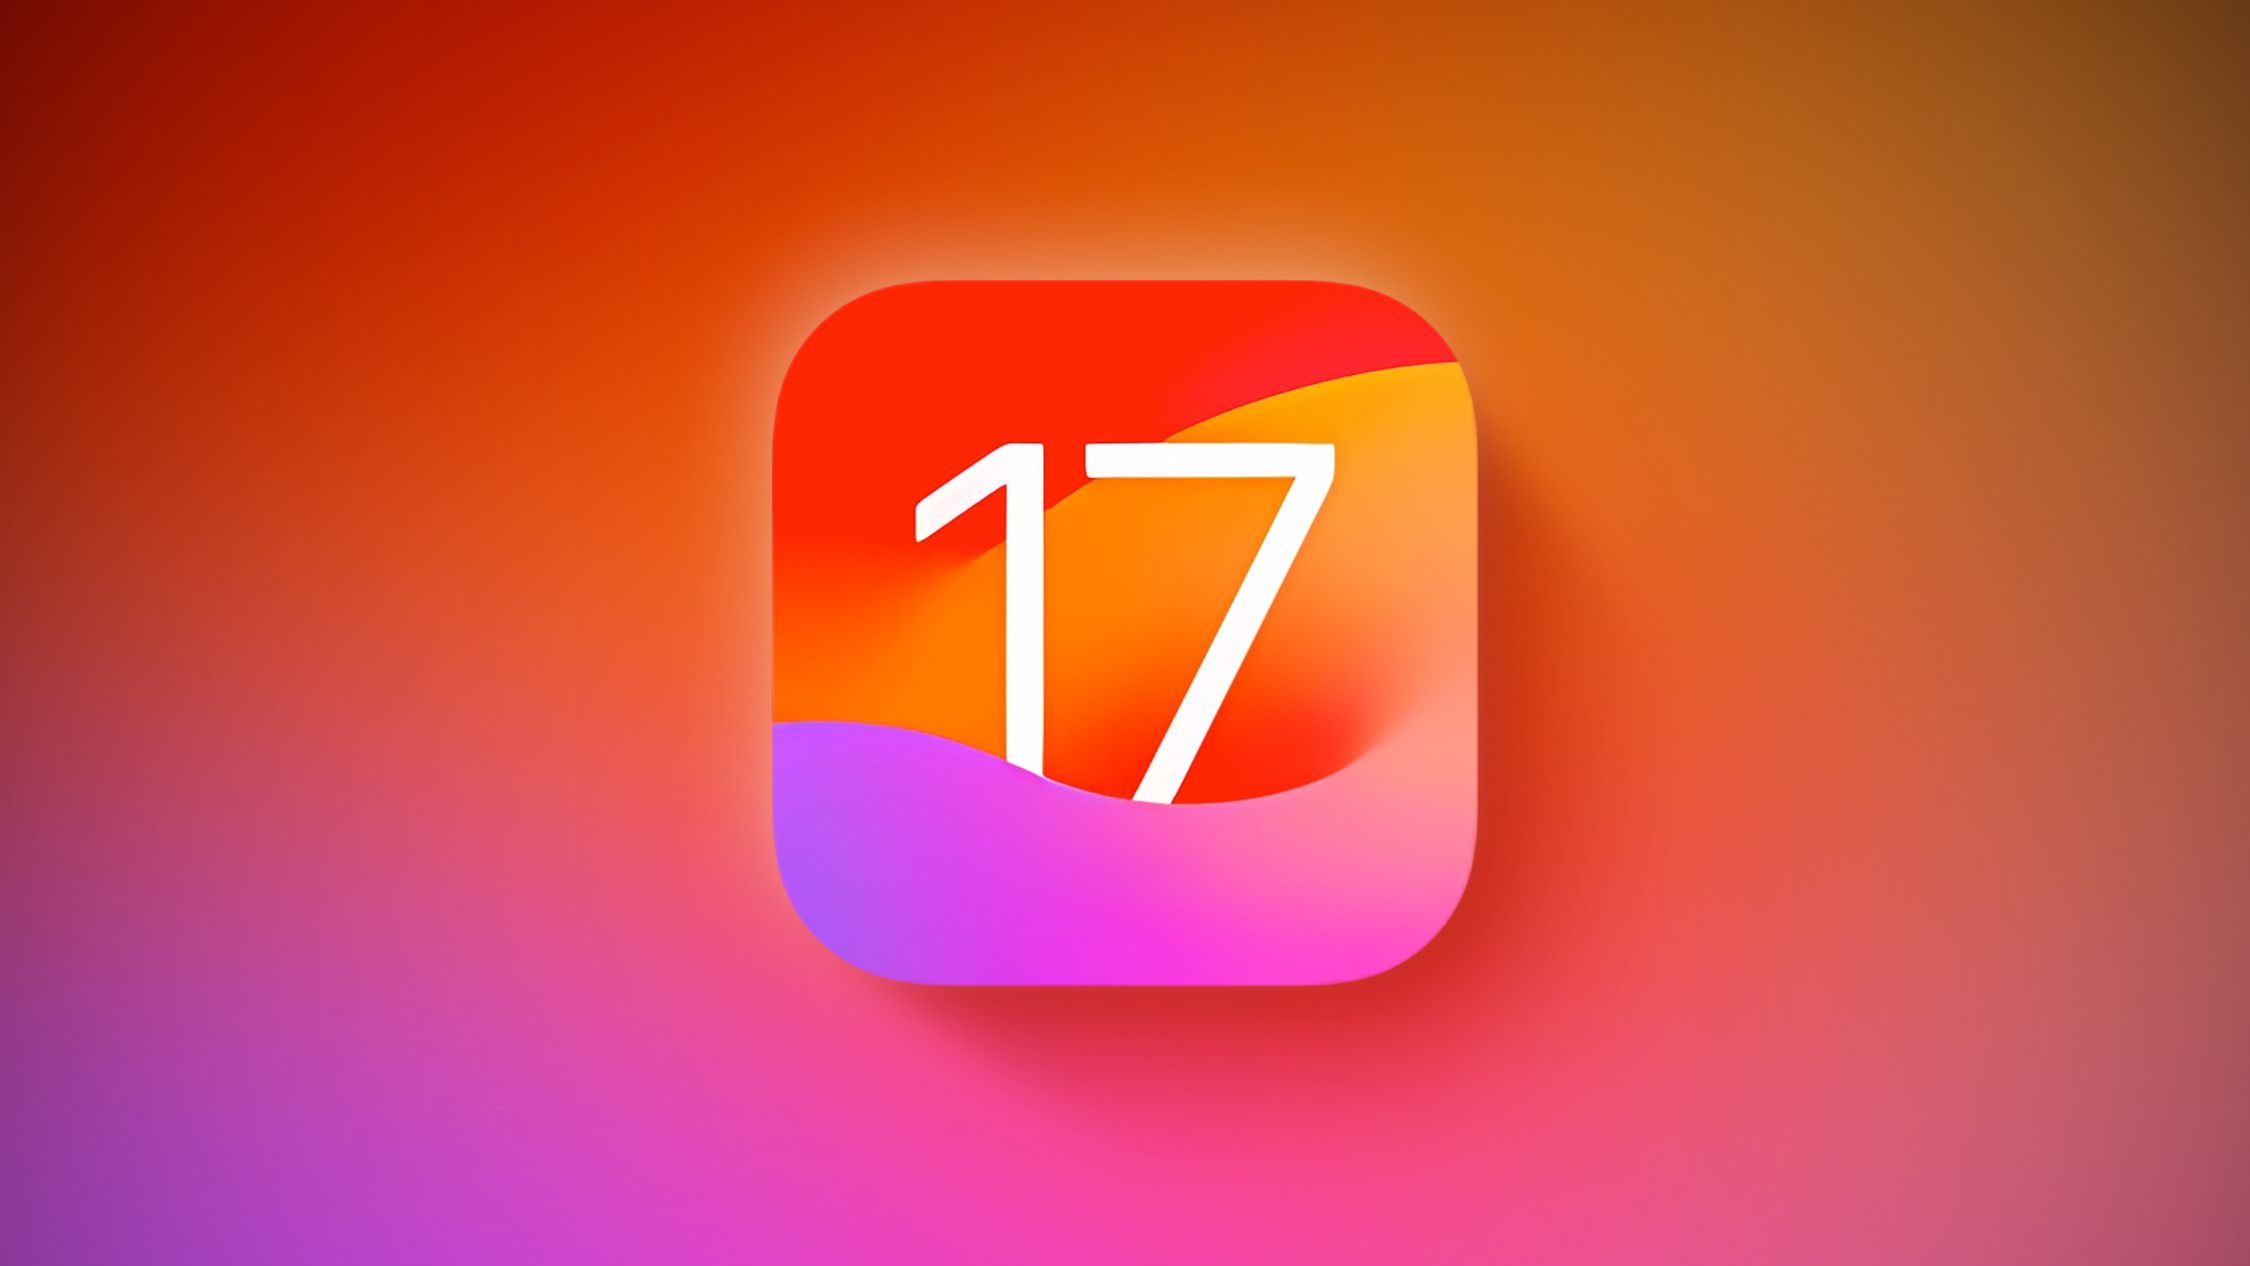 iOS 17 zostanie wydany jutro dla iPhone’a i będzie zawierał 10 nowych funkcji